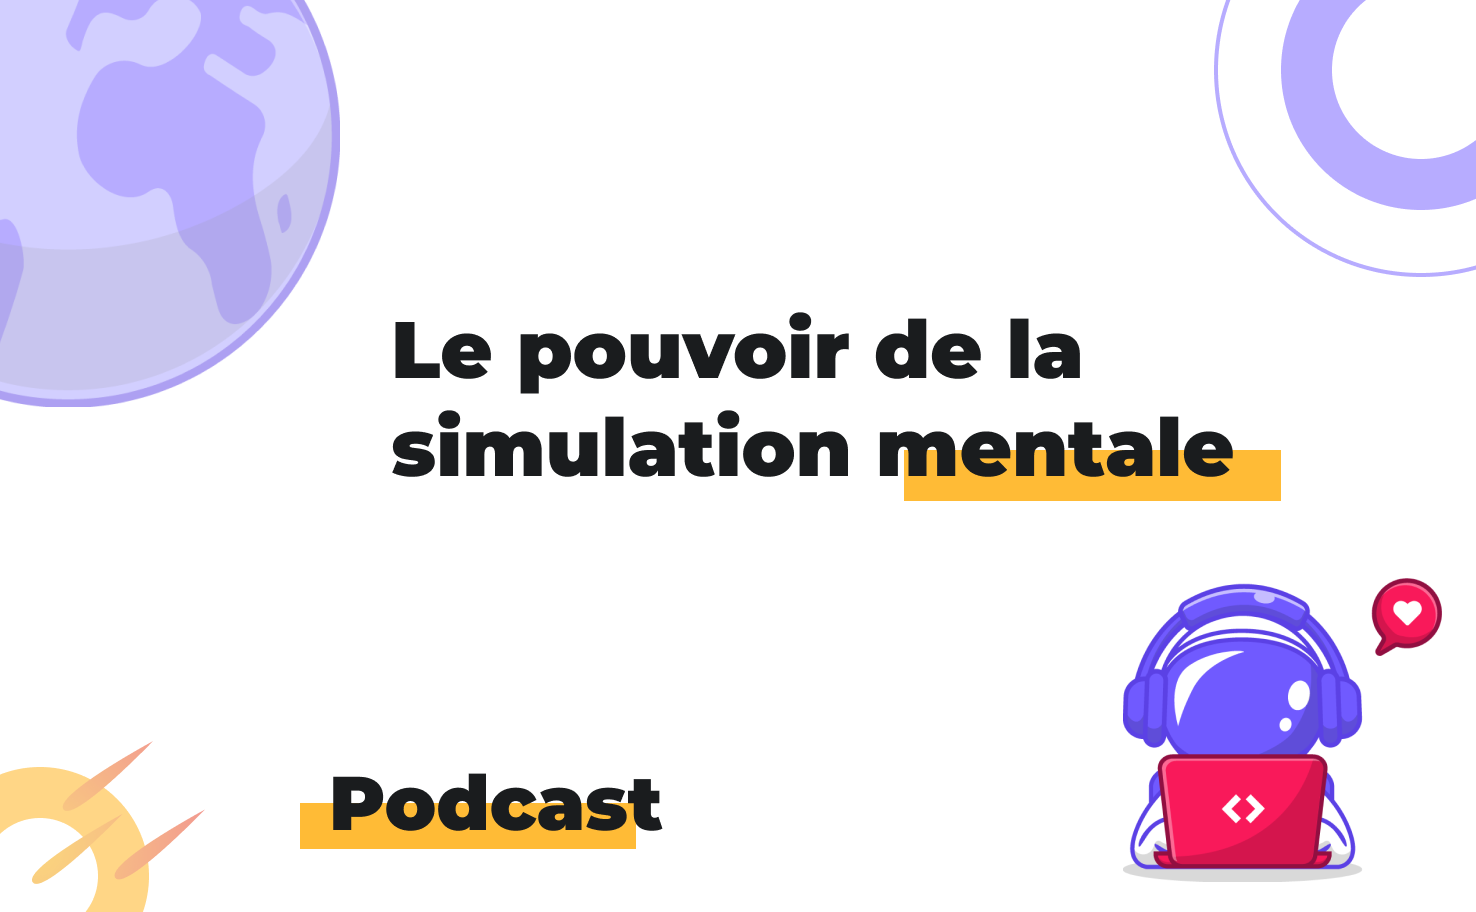 L'image affiche le sujet du podcast: Le pouvoir de la simulation mentale